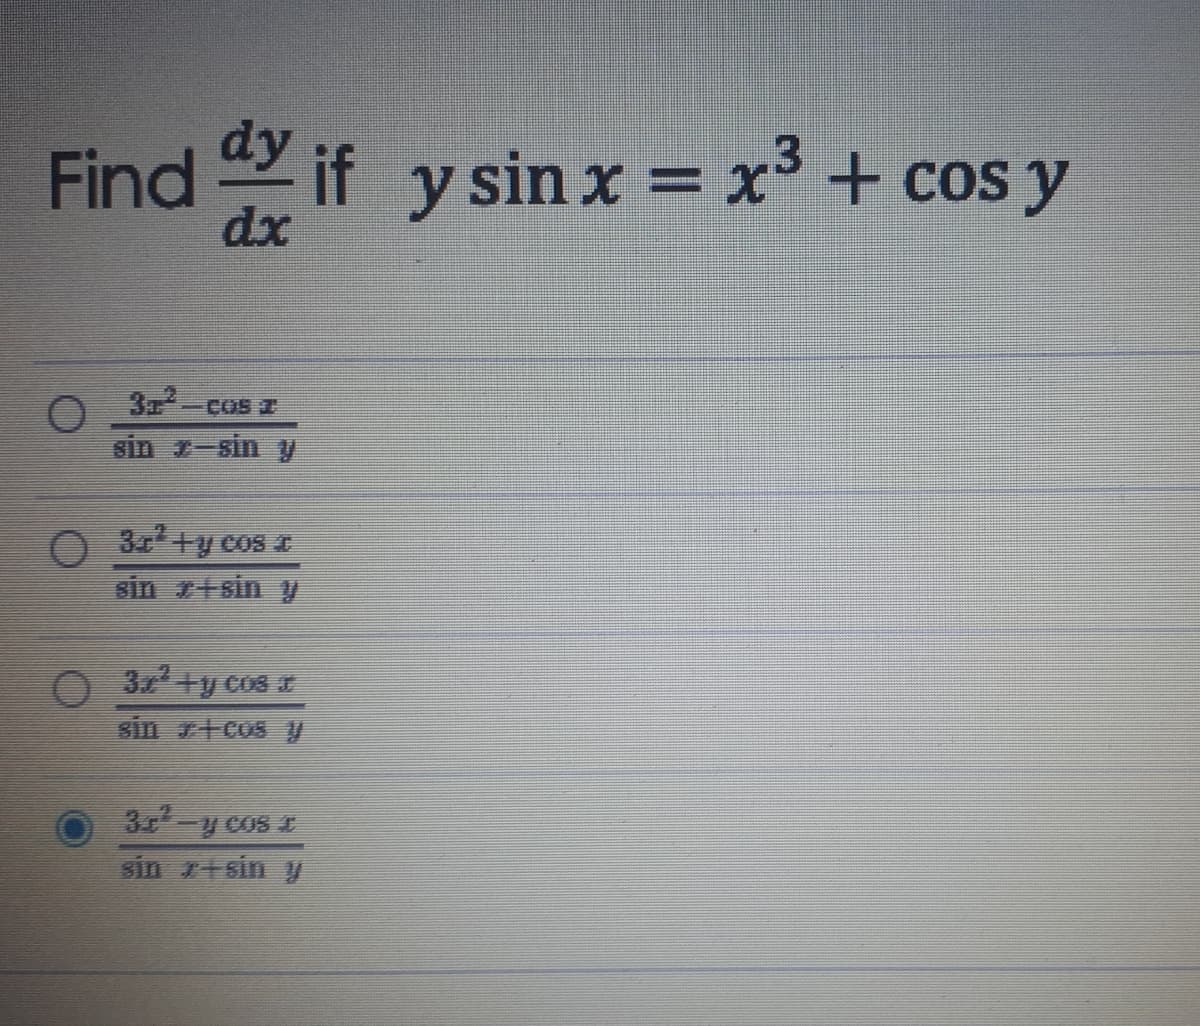 Find if y sin x = x' + cos y
dx
3
sin r-sin y
COS T
3+y cos I
sin r+sin y
03 +y cos
3一2C05 E
sin r+sin y
